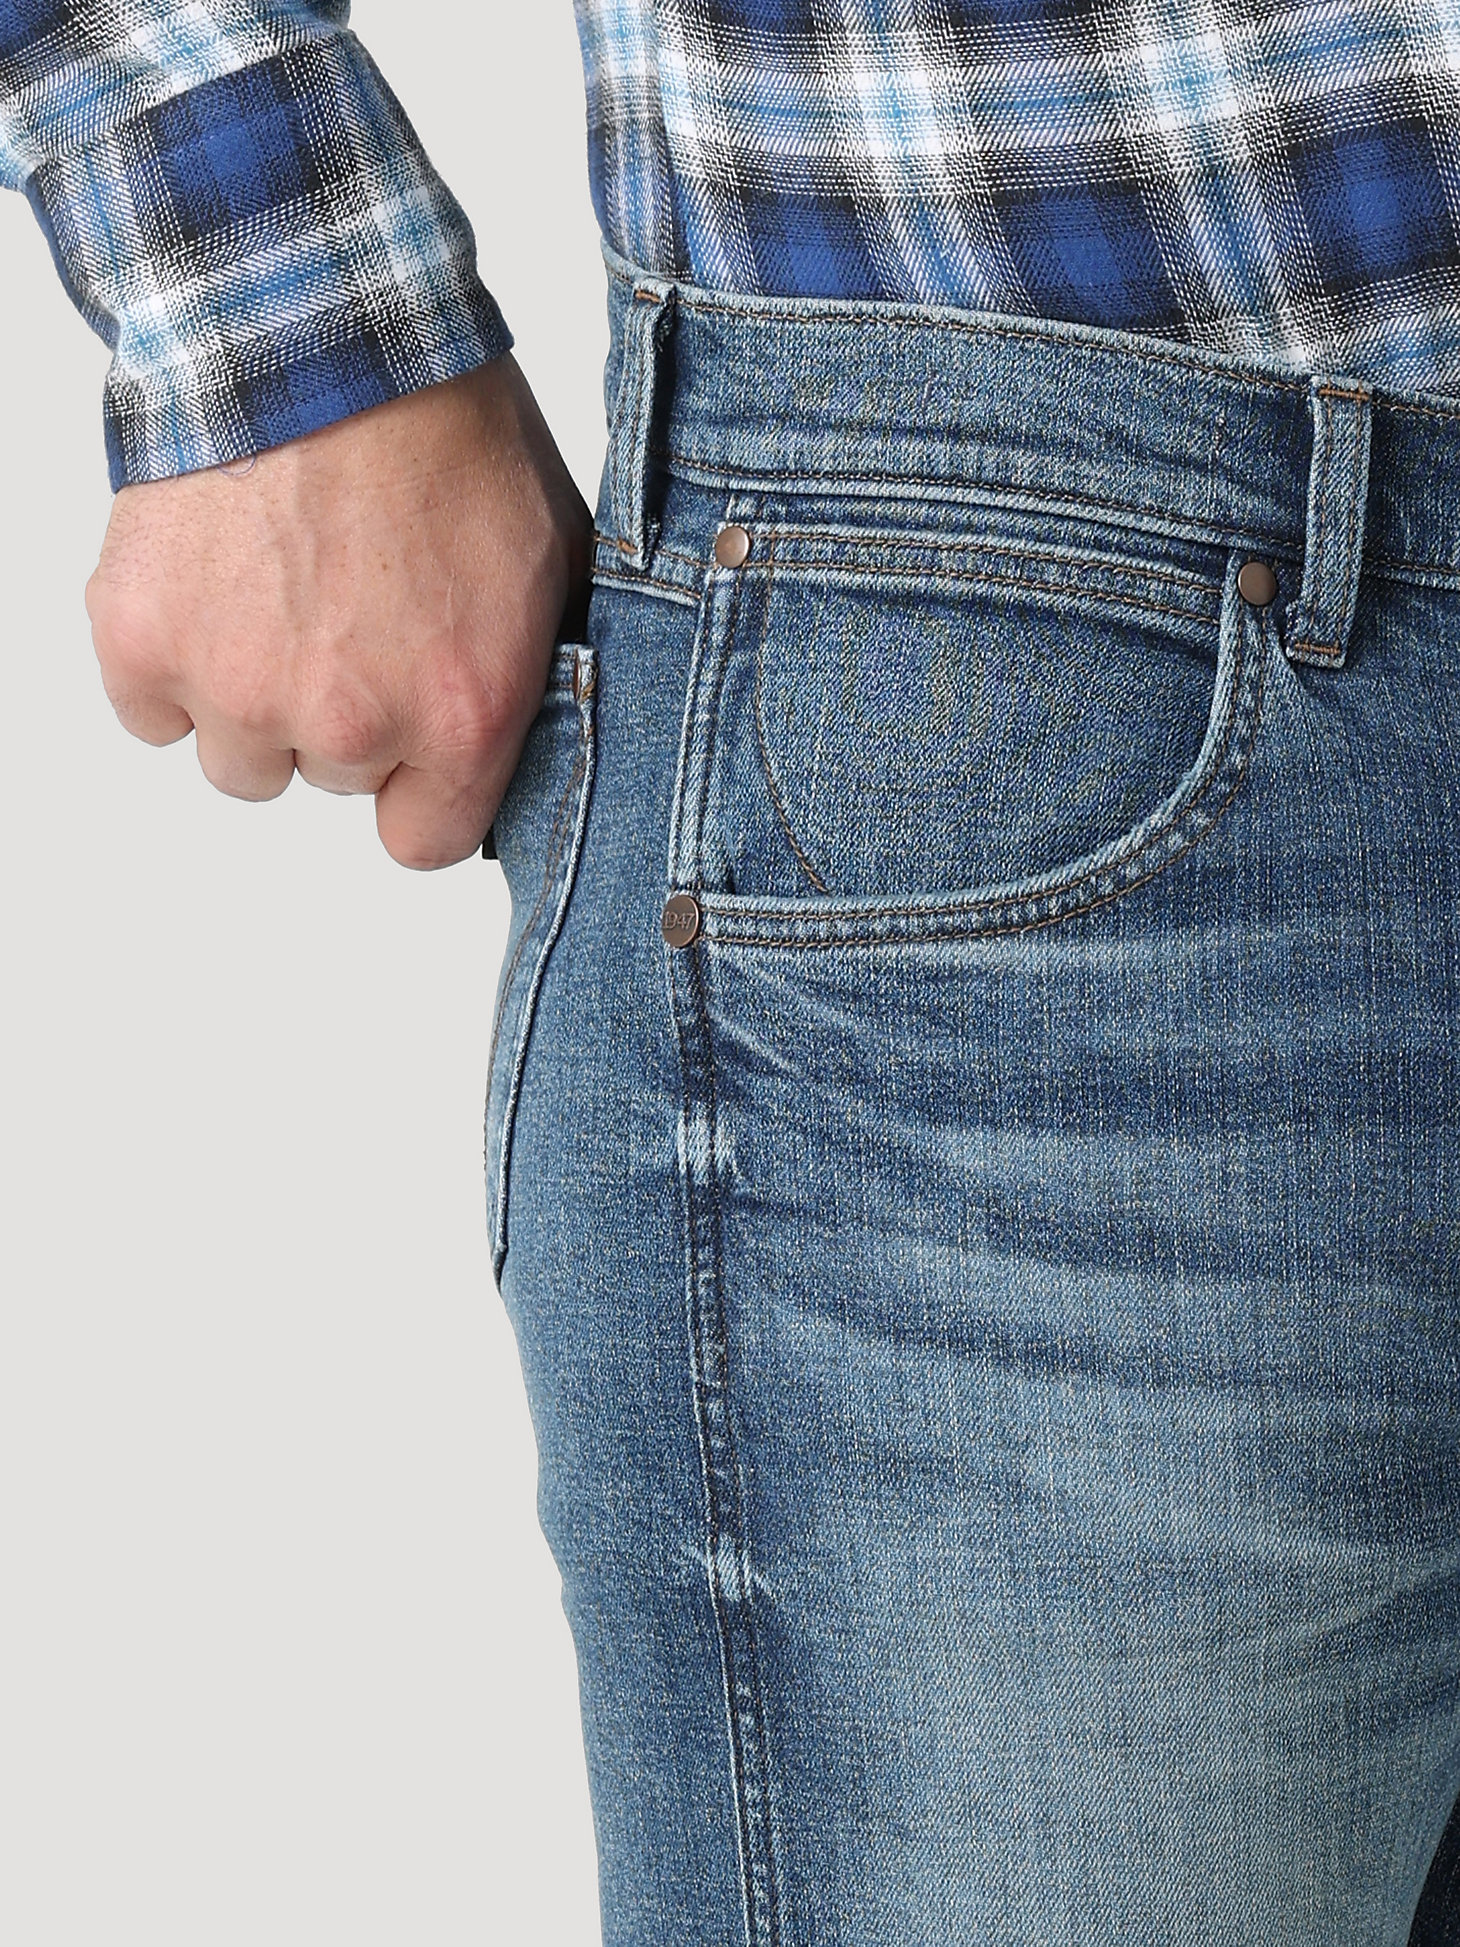 The Wrangler Retro® Premium Jean: Men's Slim Straight in Ansley alternative view 4